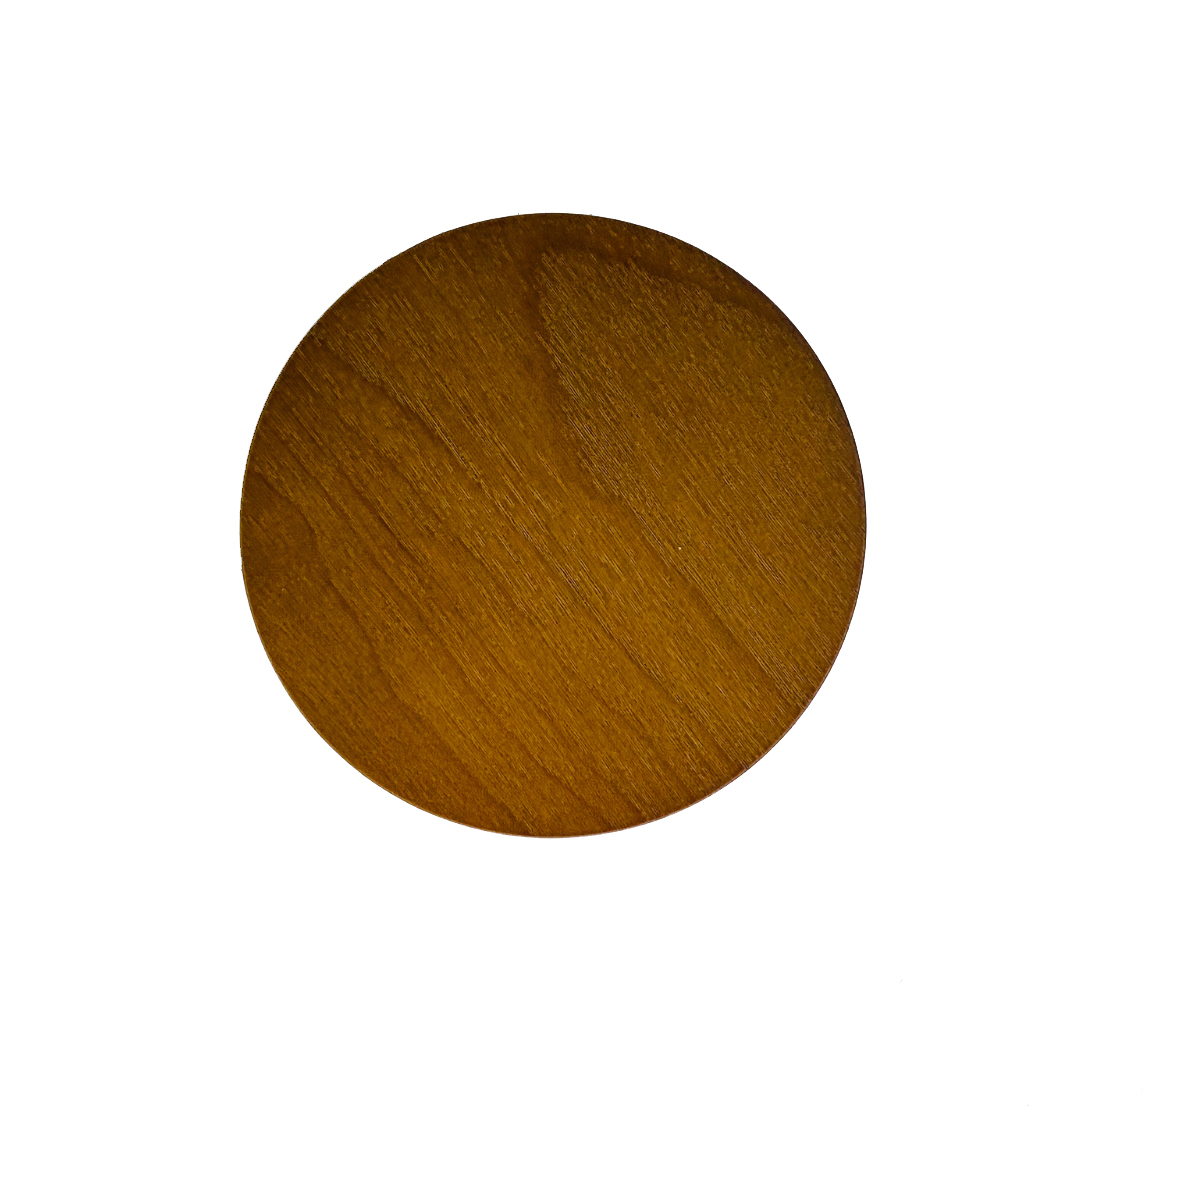 New Dark Wood Lids - 10 oz dark wood lid (2)